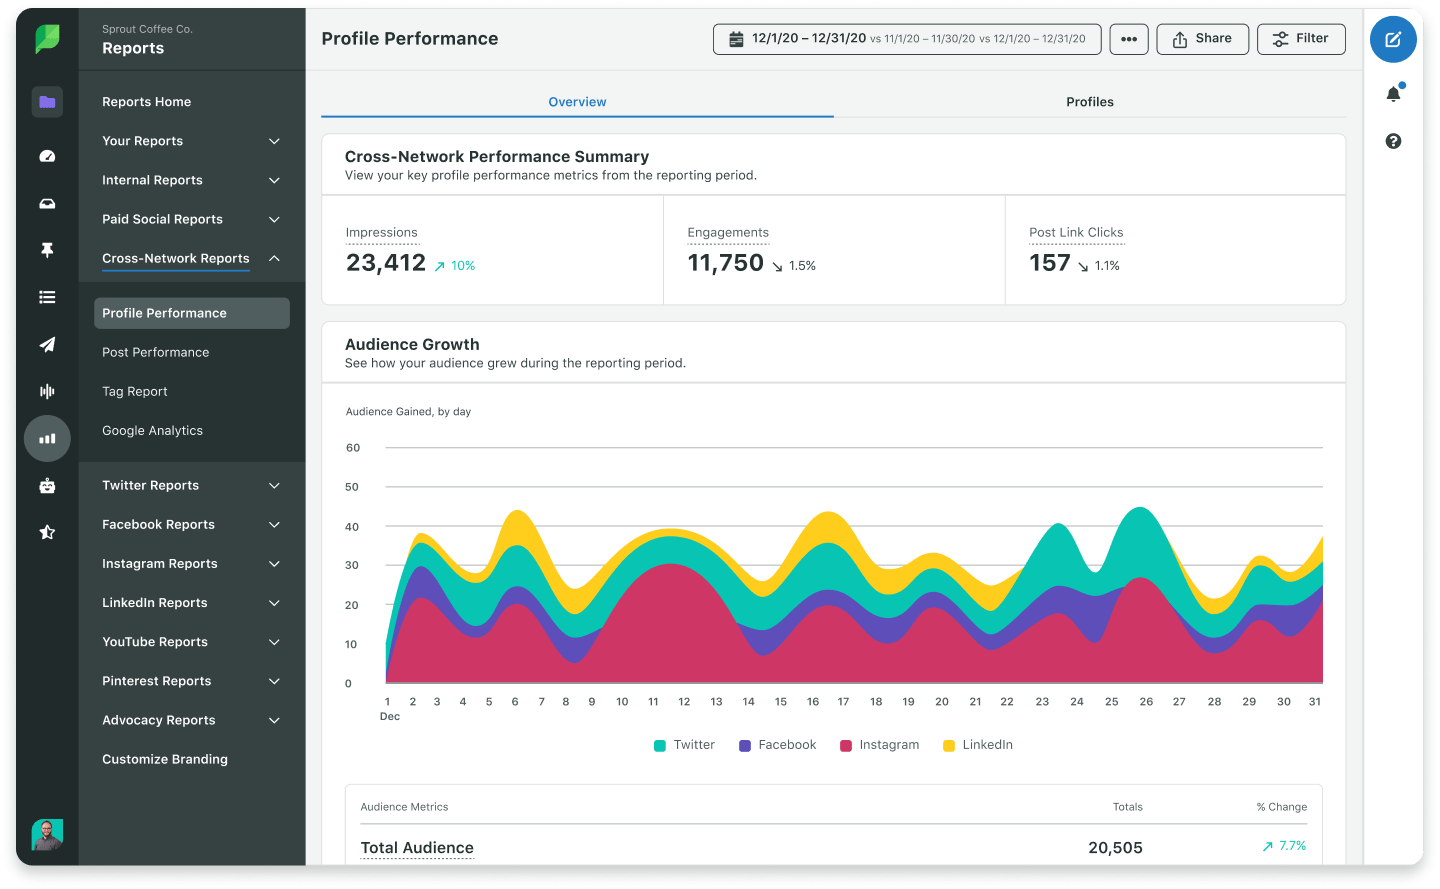 Captura da tela do relatório de desempenho do perfil do Sprout, que traz métricas gerais de vários canais, incluindo impressões totais, para destacar o desempenho e o impacto do seu trabalho nas redes sociais.